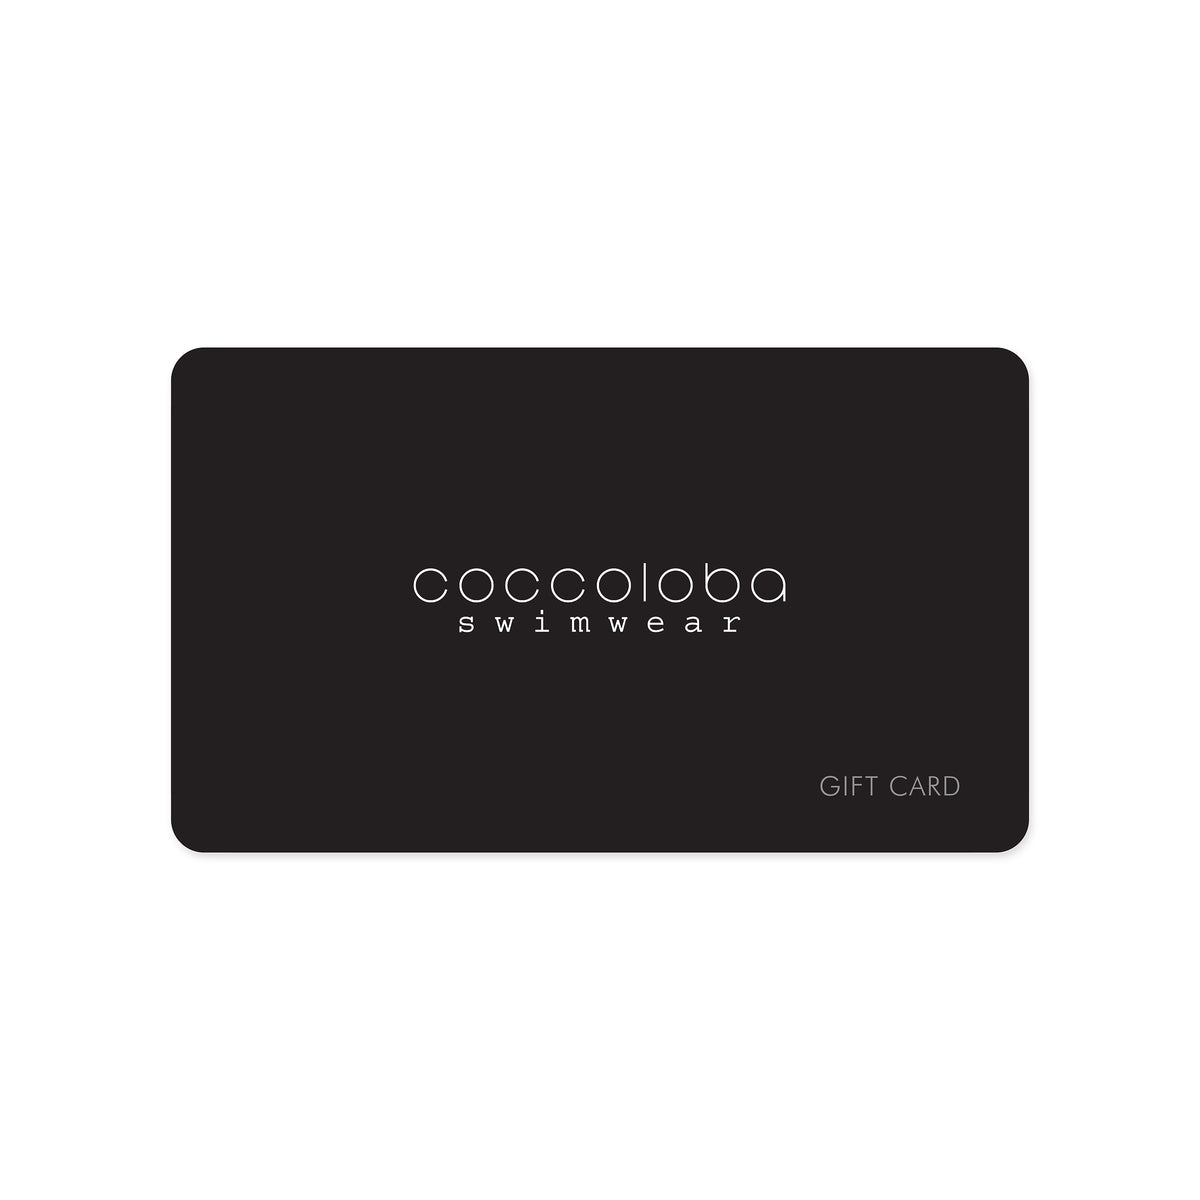 GIFT CARD – Coccoloba Swimwear